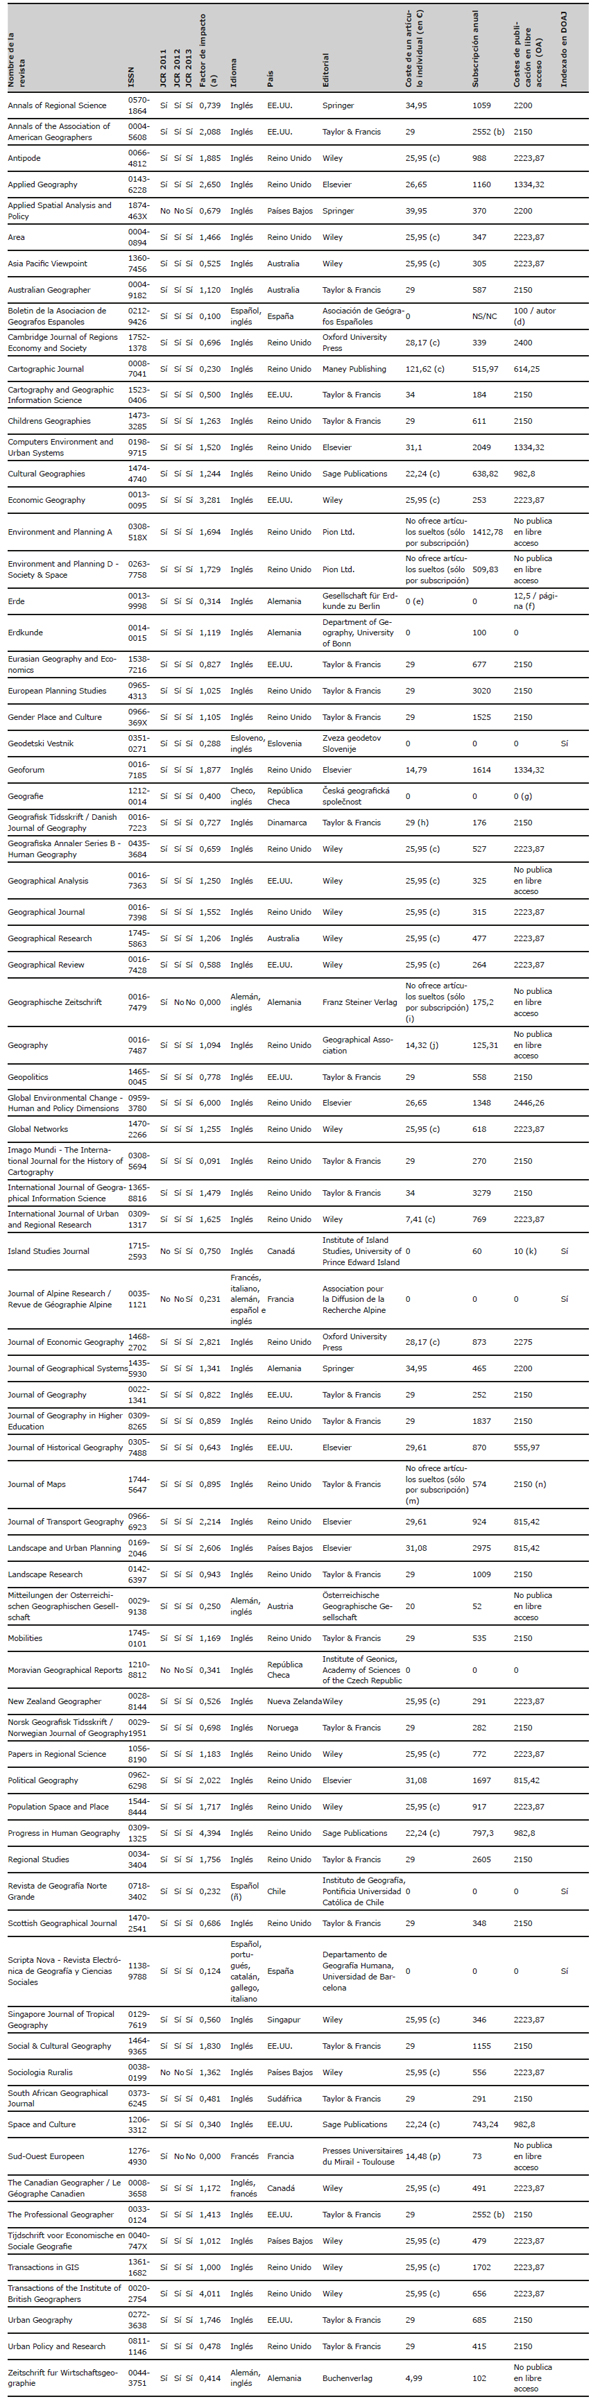 Características detalladas de las revistas de Geografía en el JCR (edición Social Science) de 2011, 2012 y 2013